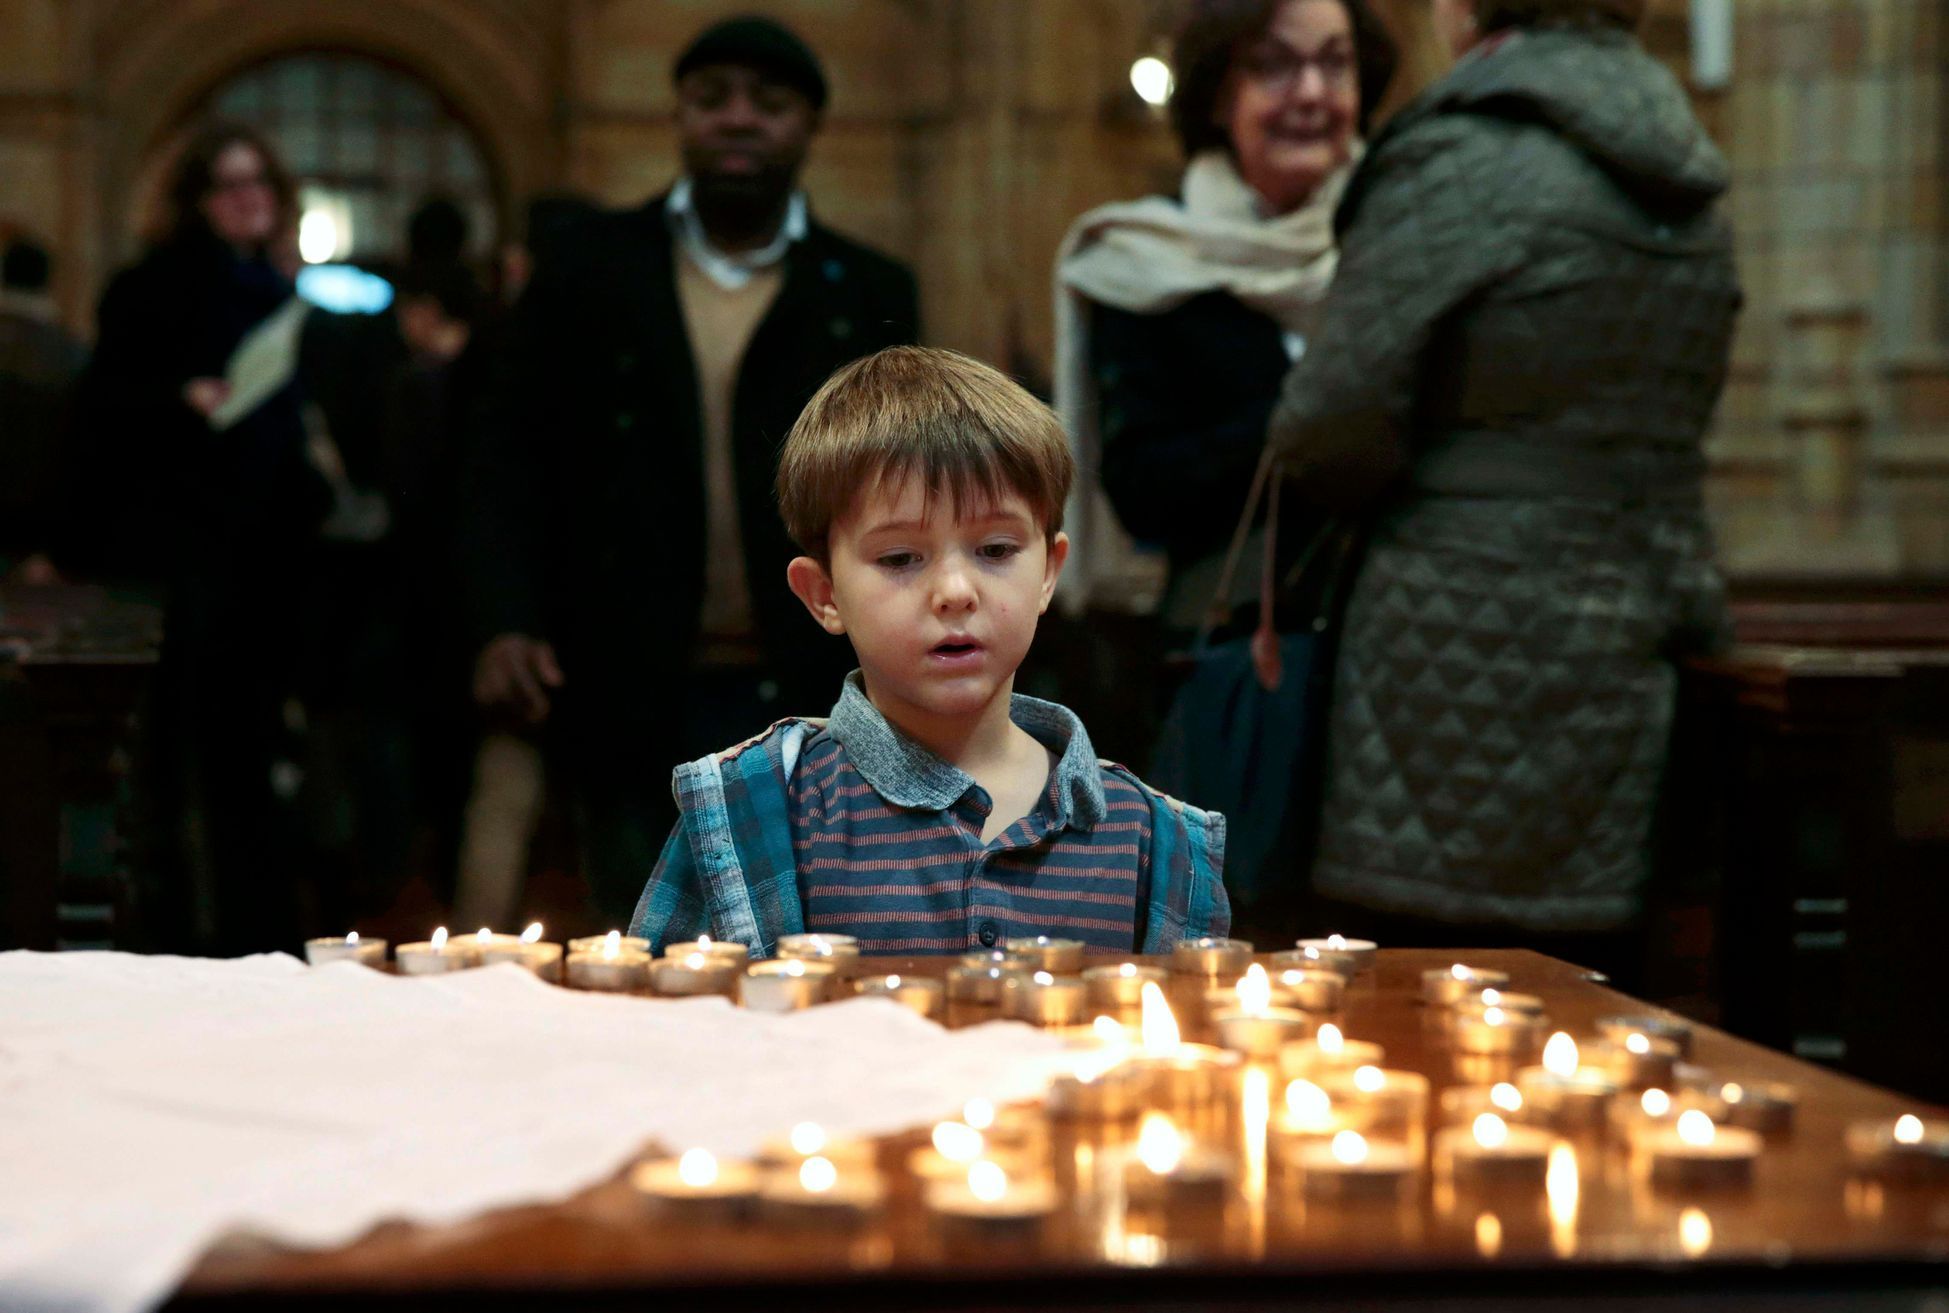 Pieta za oběti teroru v Paříži